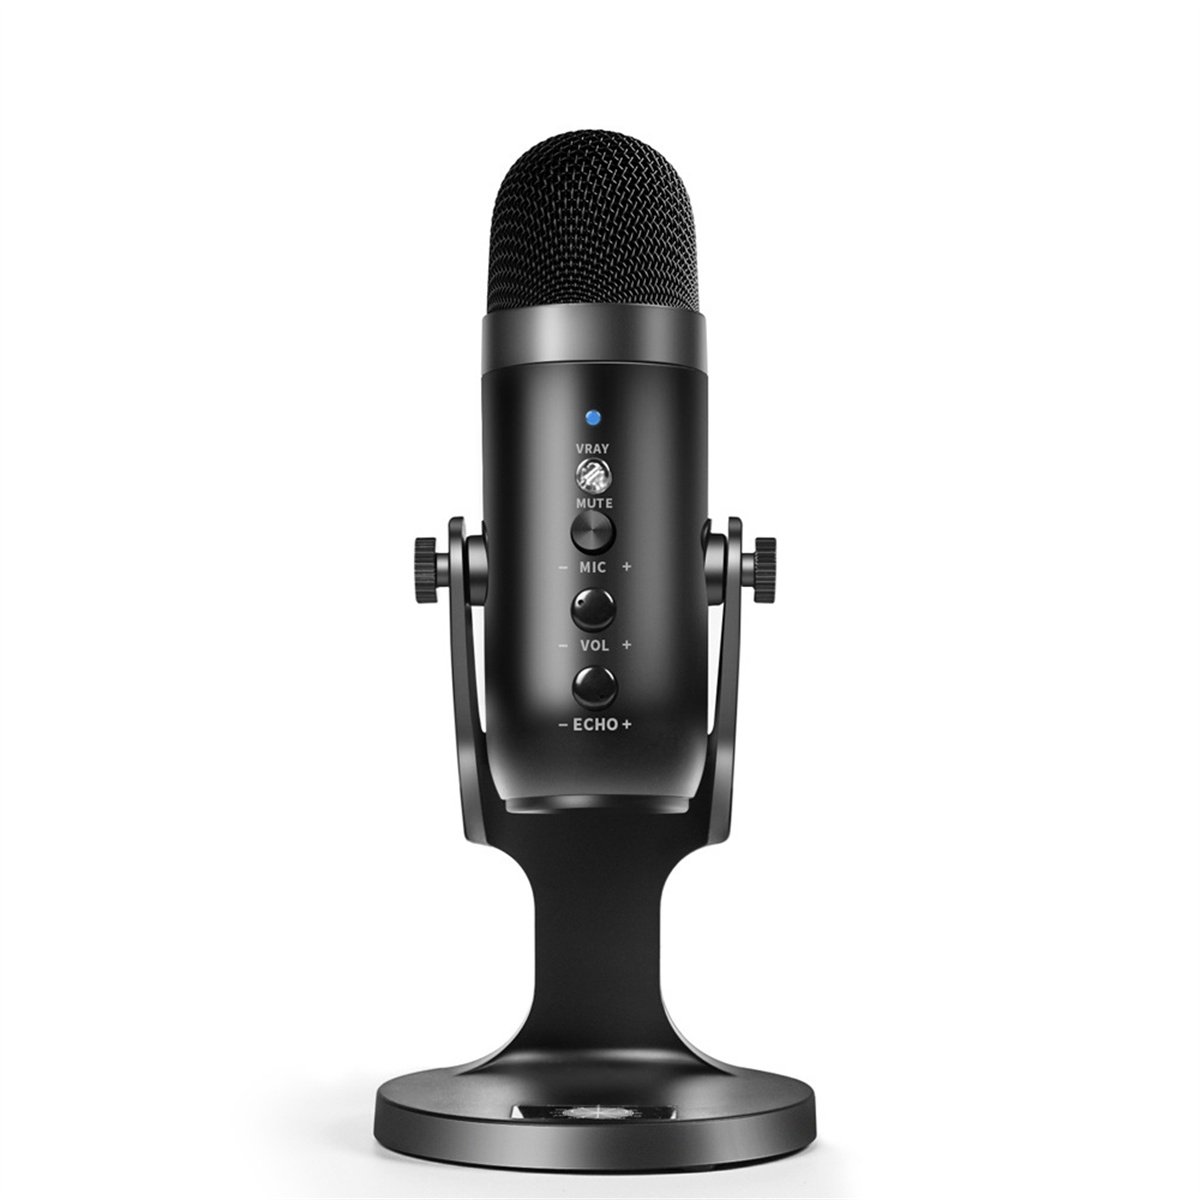 SYNTEK Mikrofon Schwarz USB-Kondensatormikrofon Aufnahme-Mikrofon Rauschunterdrückung Mikrofon, schwarz